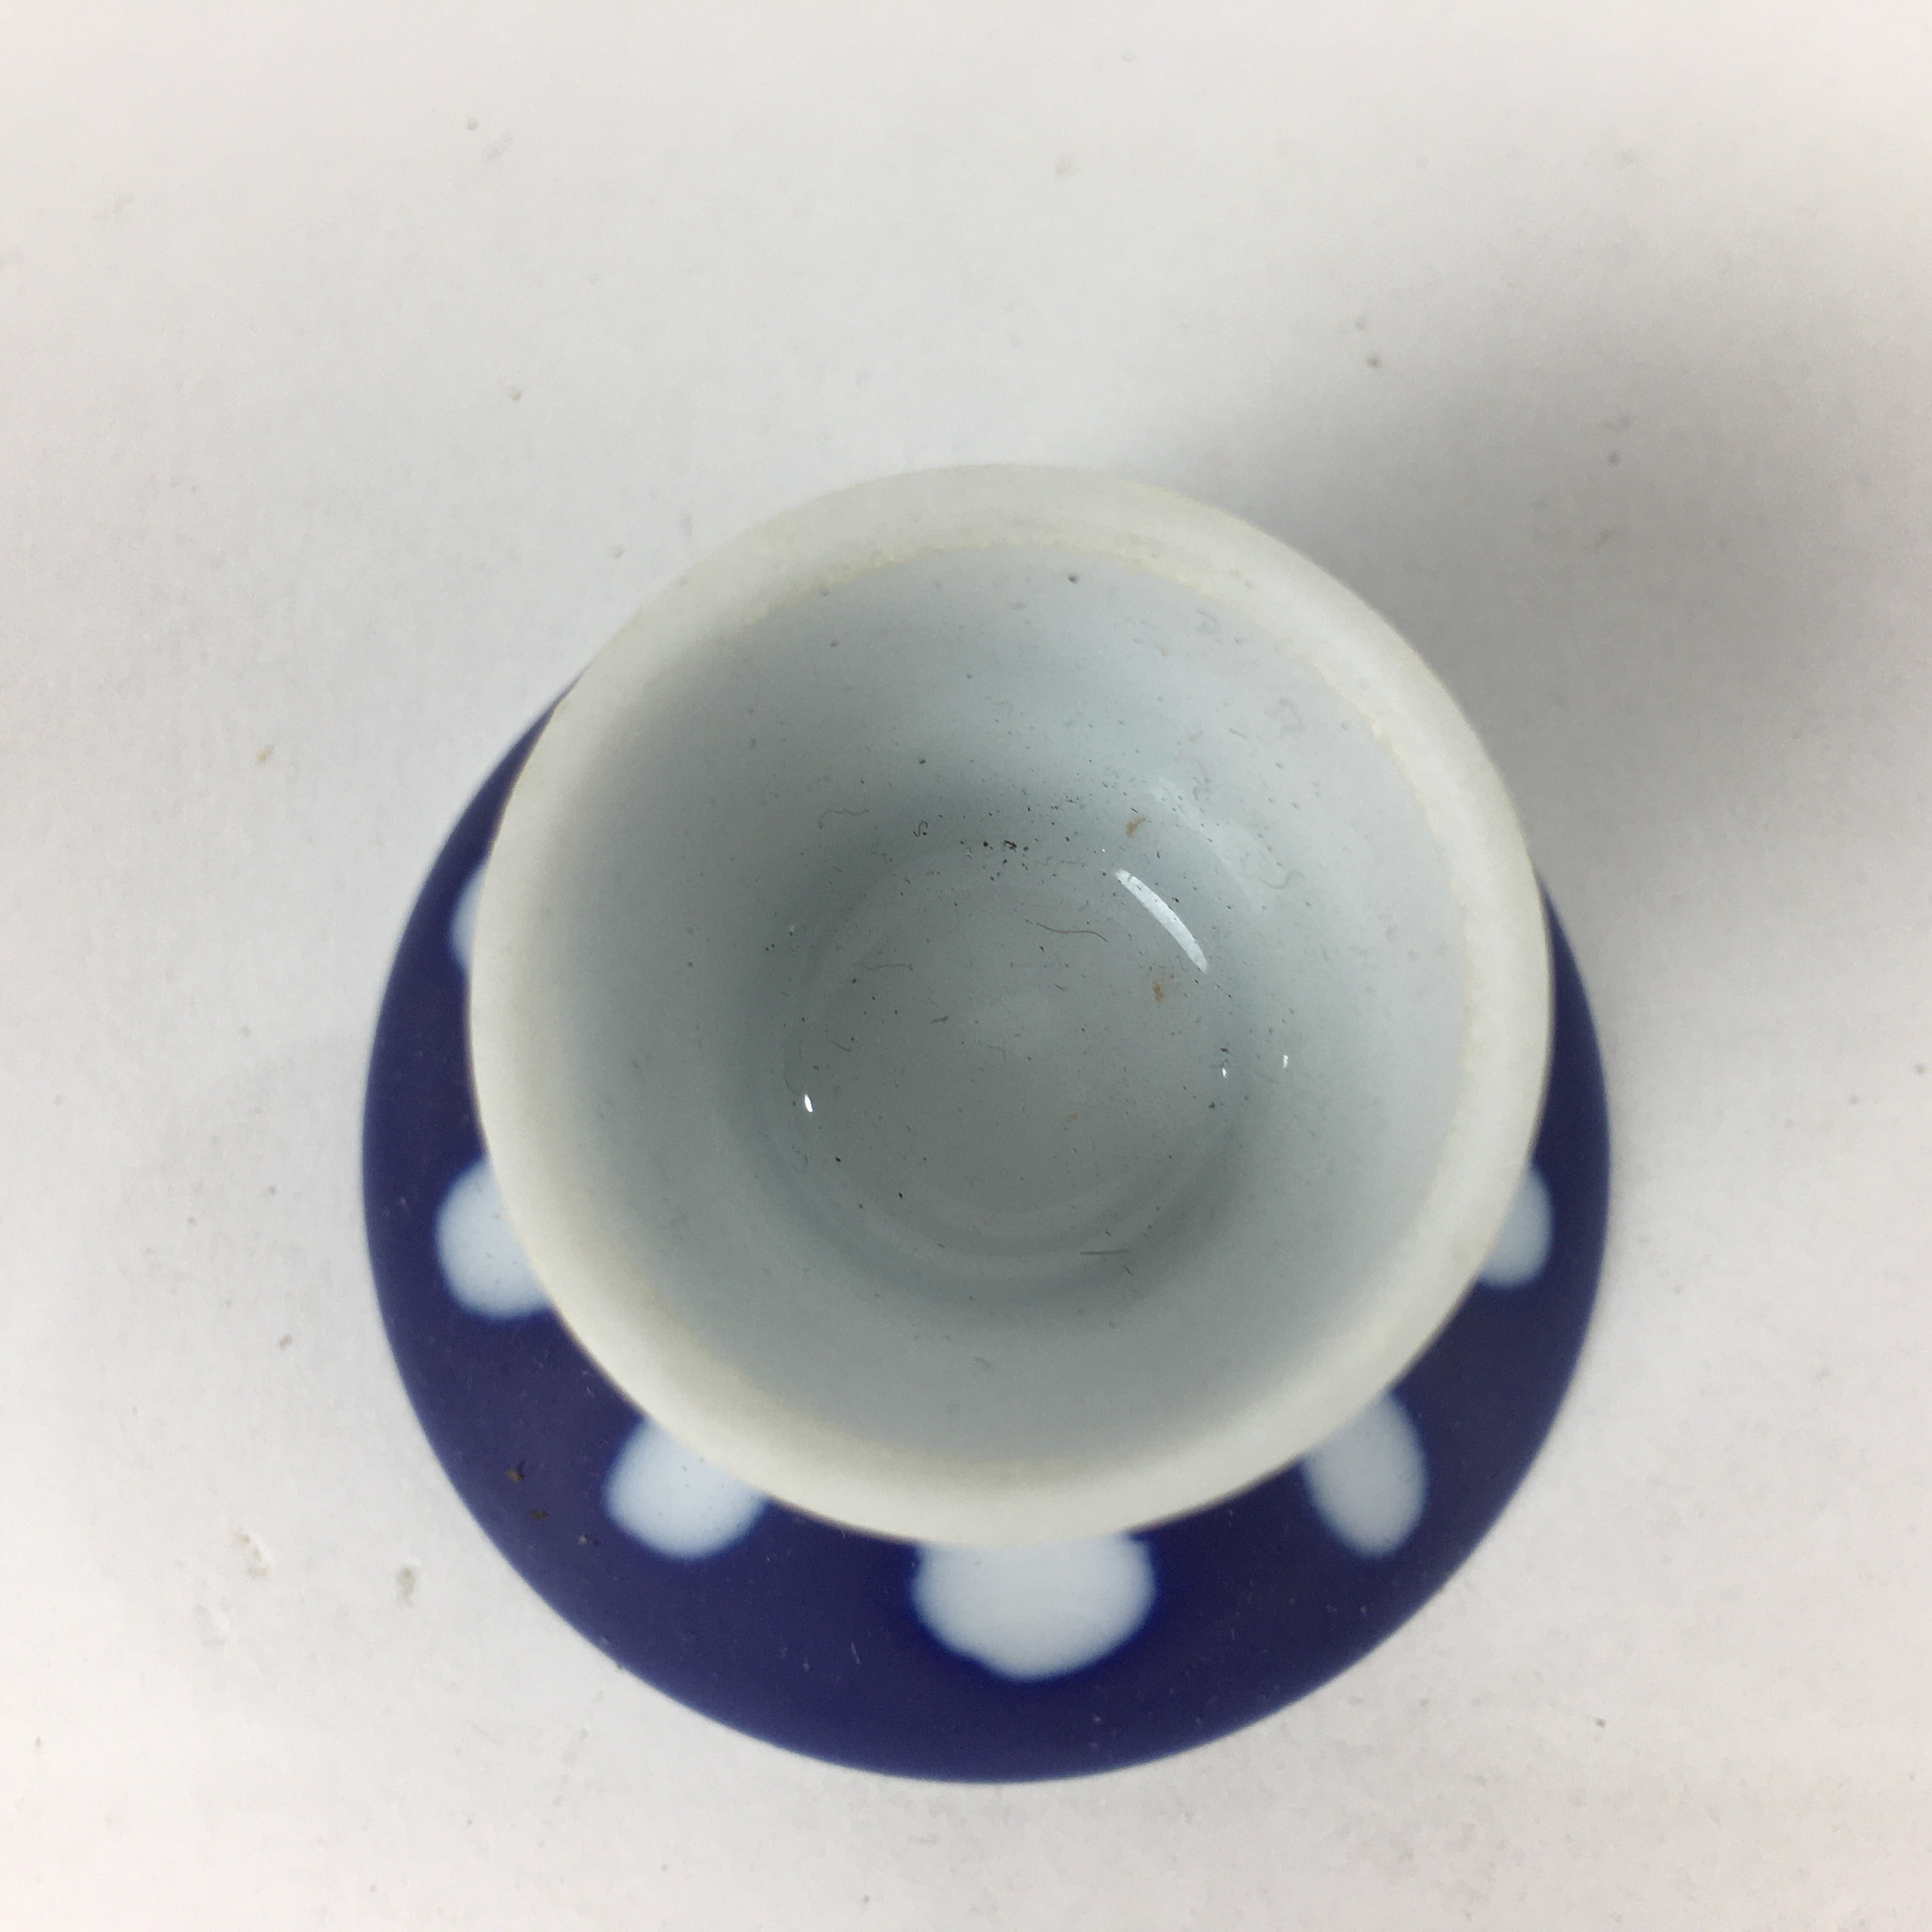 Japanese Porcelain Sake Cup Vtg Blue Kohai Guinomi Ochoko Sakazuki G41